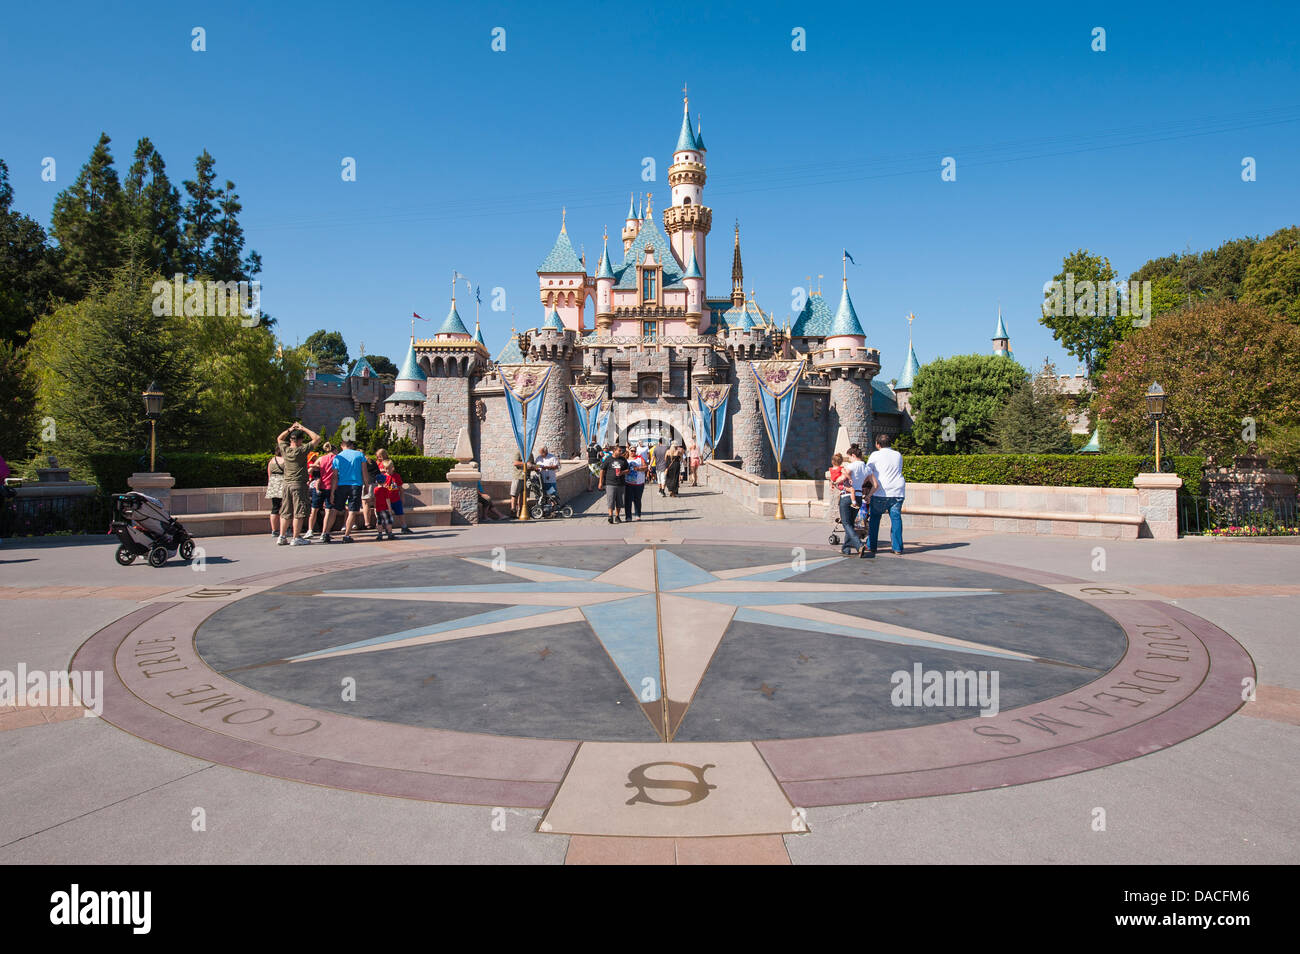 Boussole à Magic Kingdom Château Disneyland, Anaheim, Californie. Banque D'Images